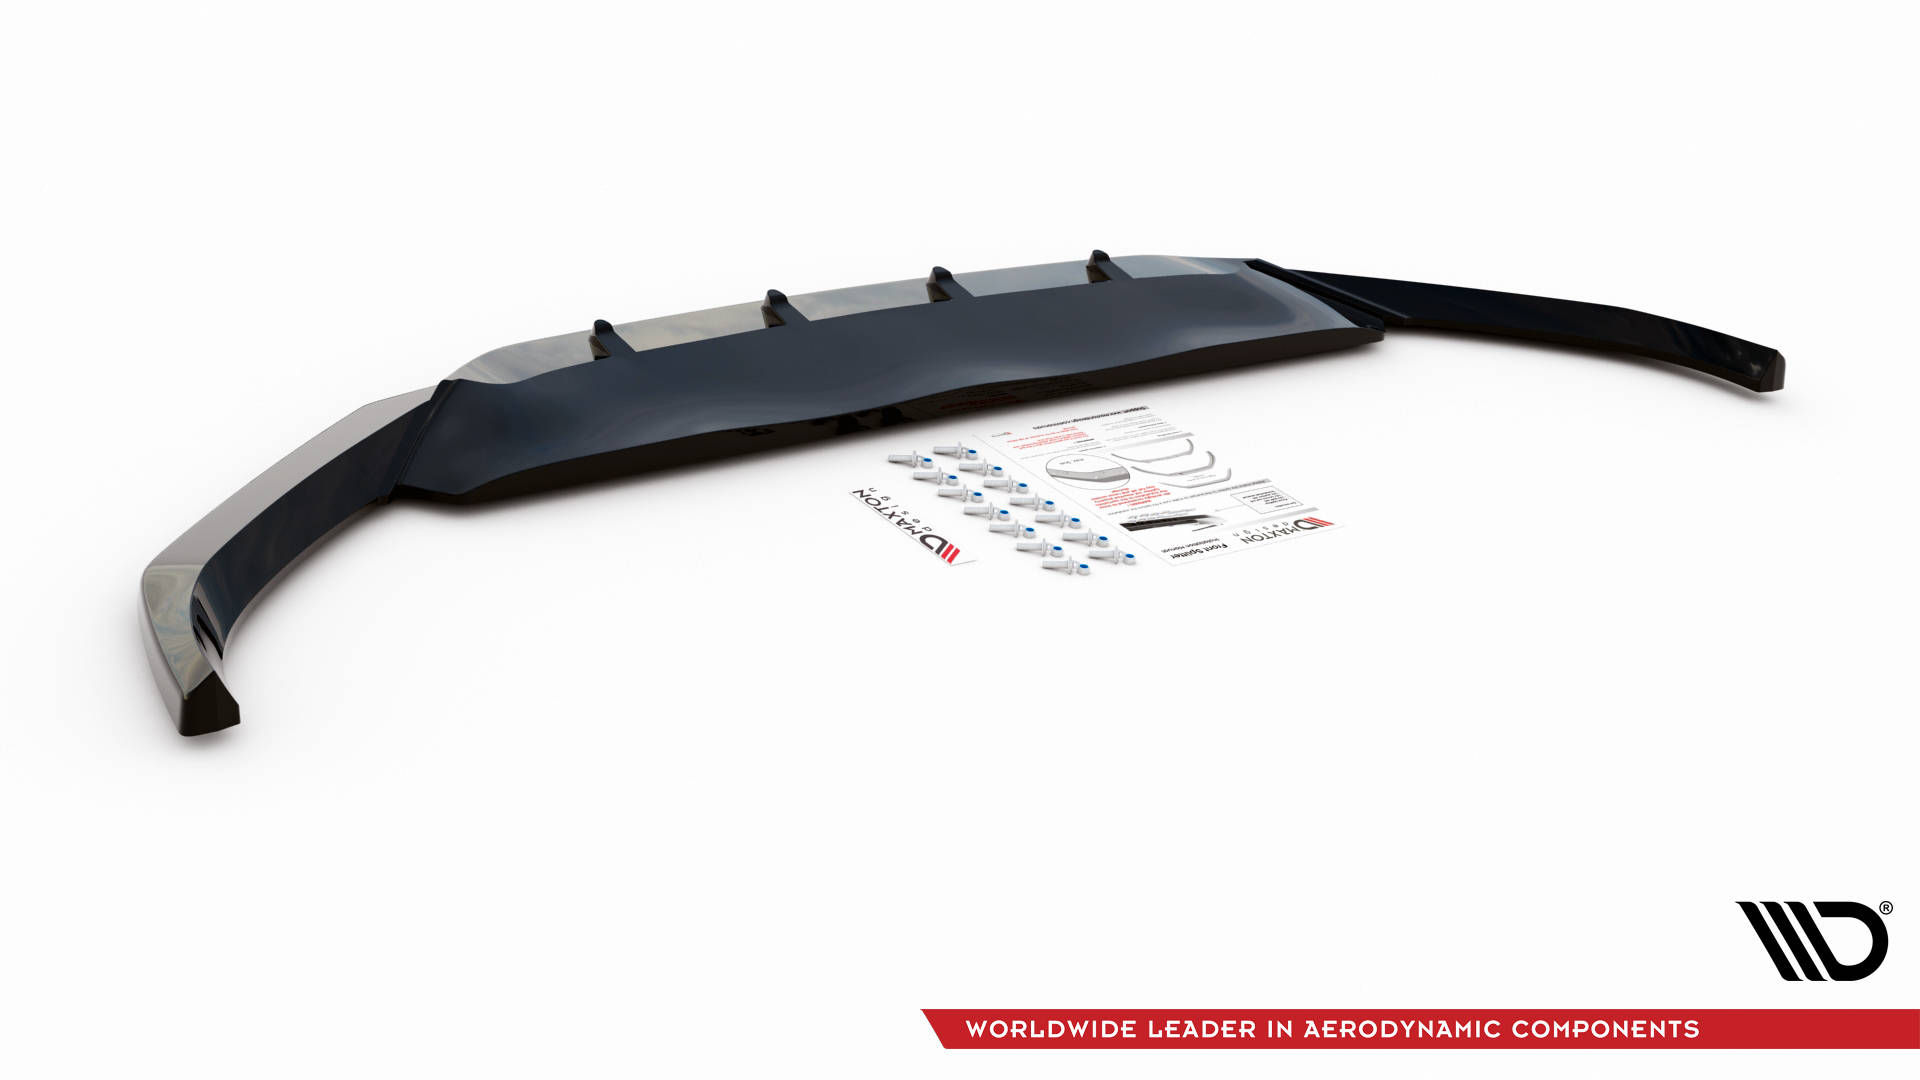 Maxton Design Front Ansatz V.1 für Volkswagen Passat B8 Facelift schwarz Hochglanz